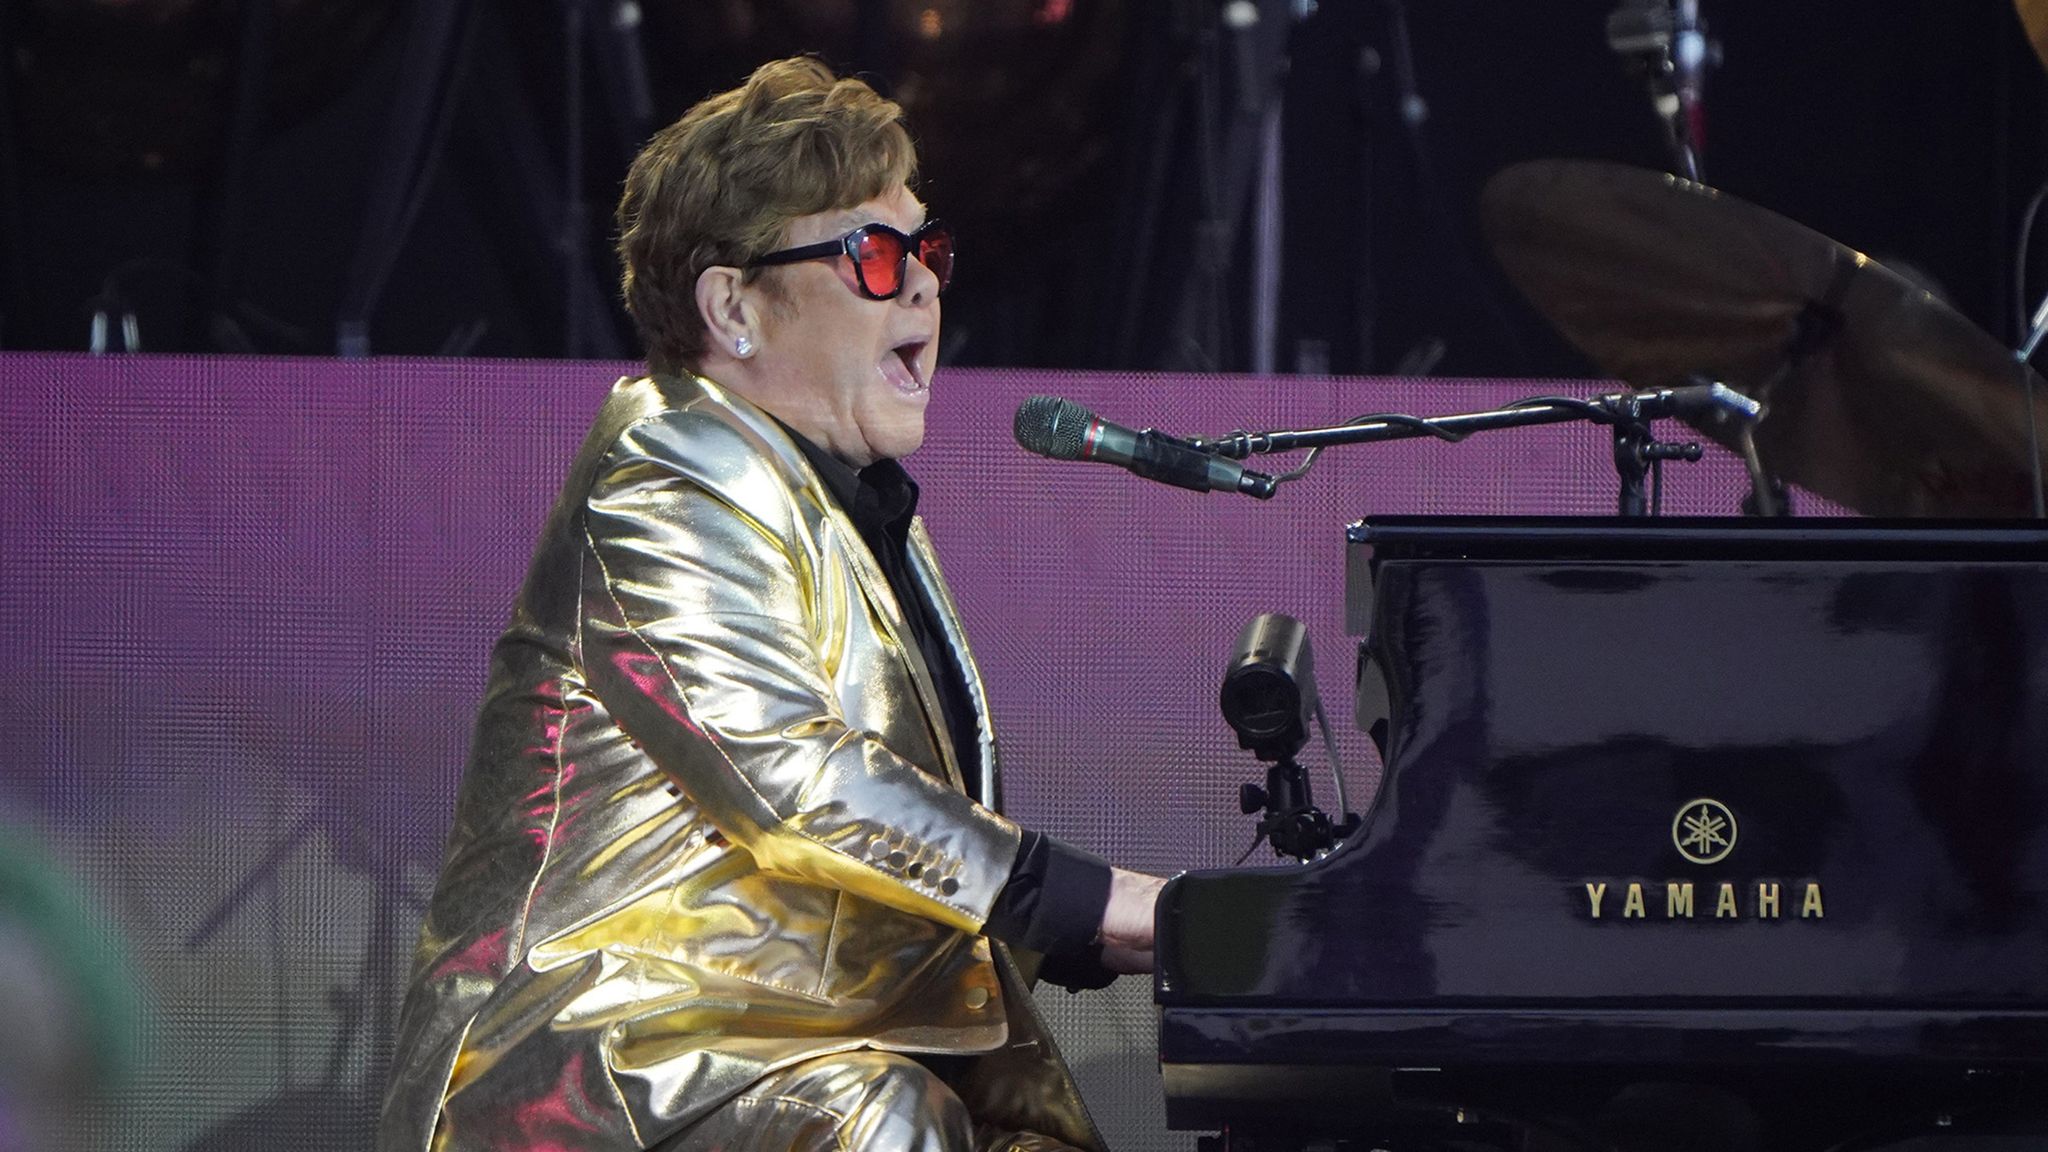 Sir Elton John hails 'emotional night' as he performs final UK gig at